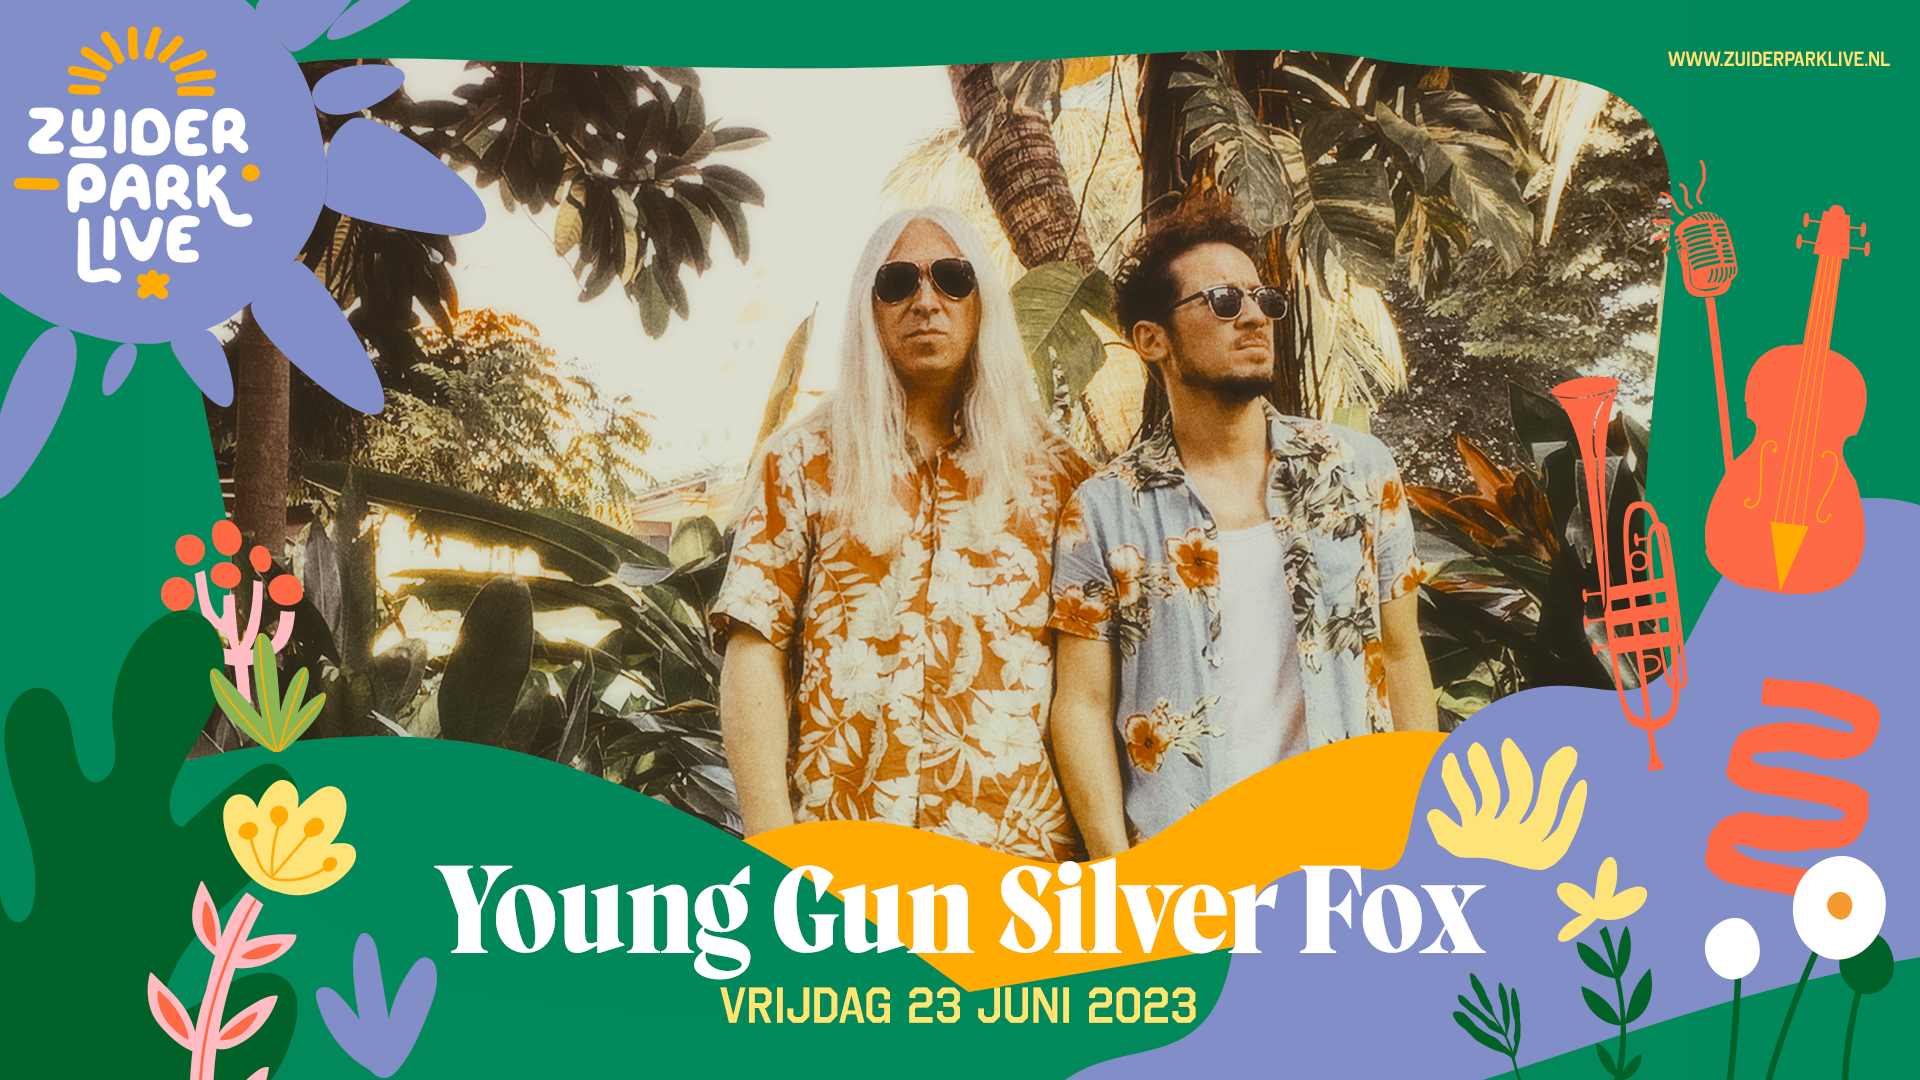 Young Gun Silver Fox komt naar Zuiderparktheater Den Haag